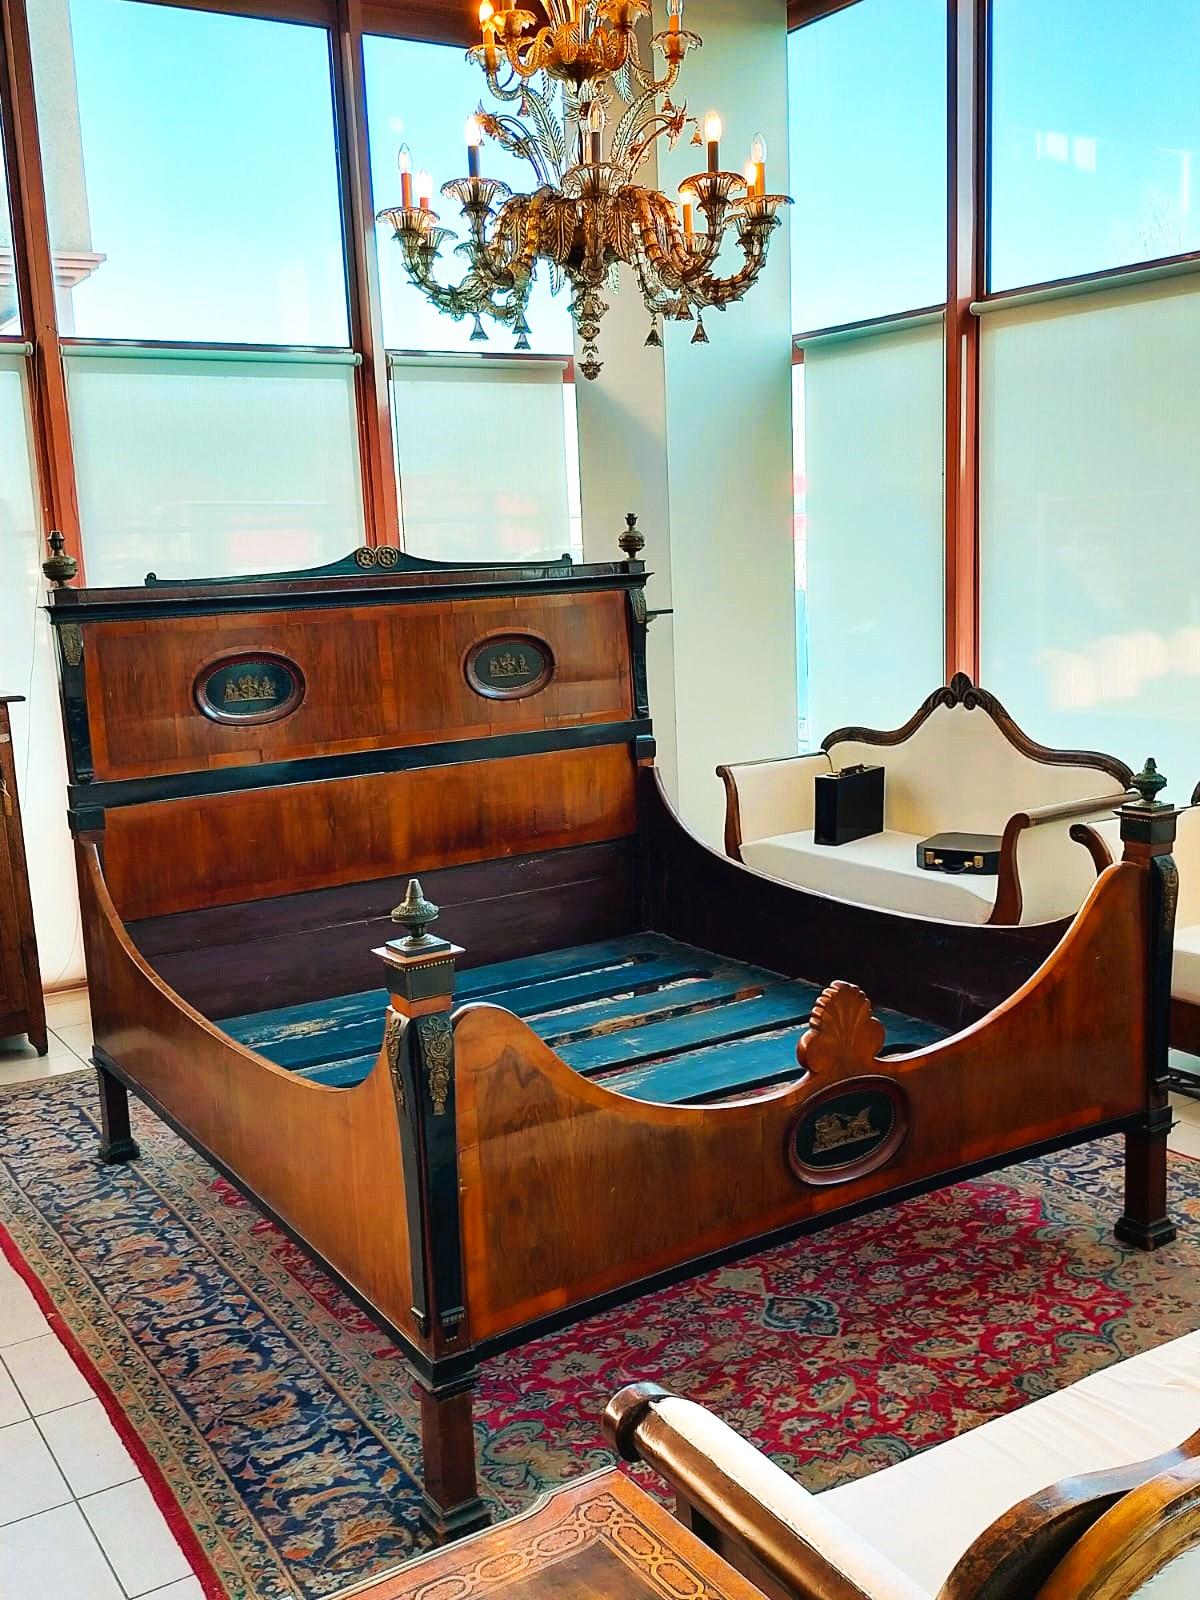 Antikes Empire-Bett, groß und original
Dieses große und originelle antike Empire-Bett stammt aus den frühen 1800er Jahren. Es handelt sich um ein bedeutendes Empire-Bett, das noch nie restauriert wurde und komplett mit allem ausgestattet ist,